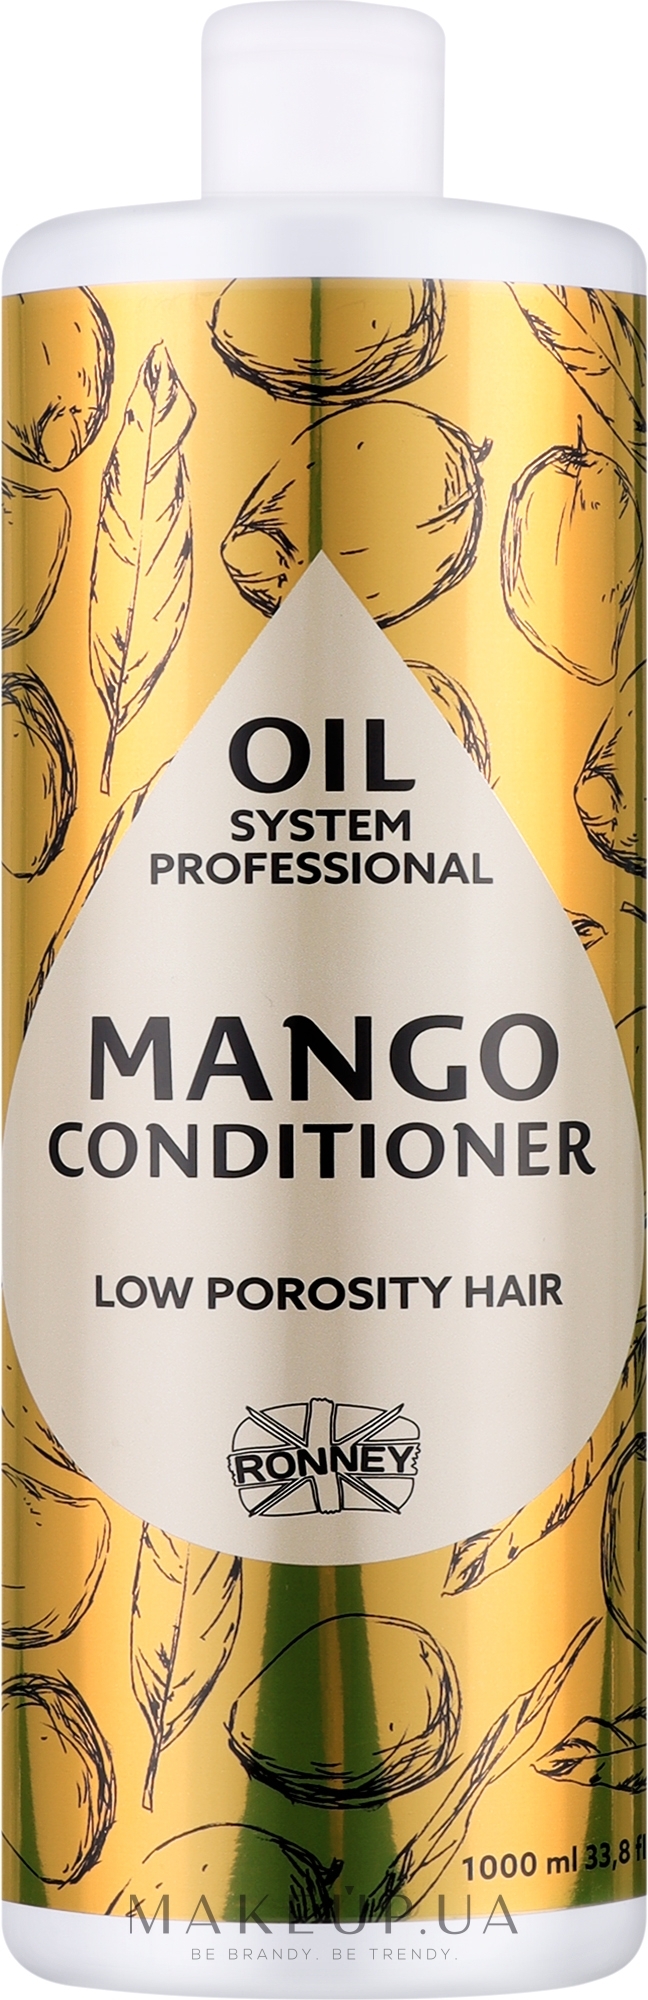 Кондиціонер для низькопористого волосся з олією манго - Ronney Professional Oil System Low Porosity Hair Mango Conditioner — фото 1000ml